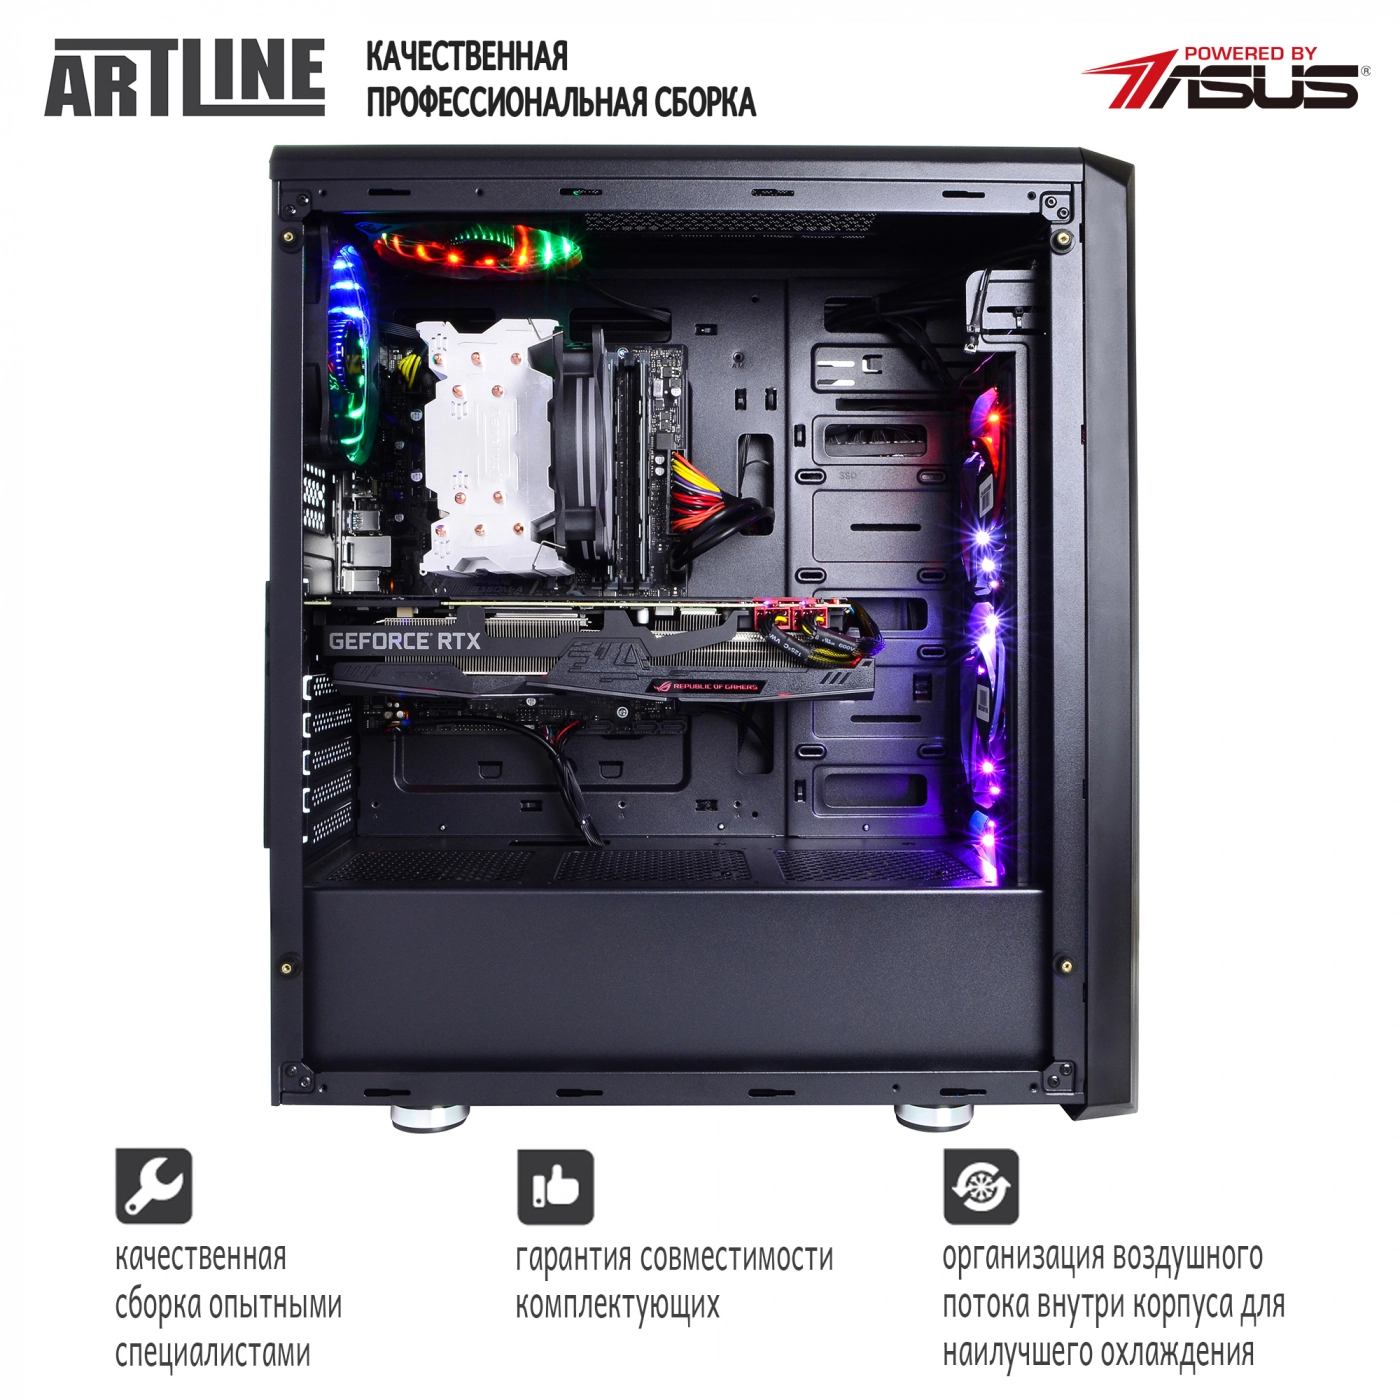 Купить Компьютер ARTLINE Gaming X95v20 - фото 7